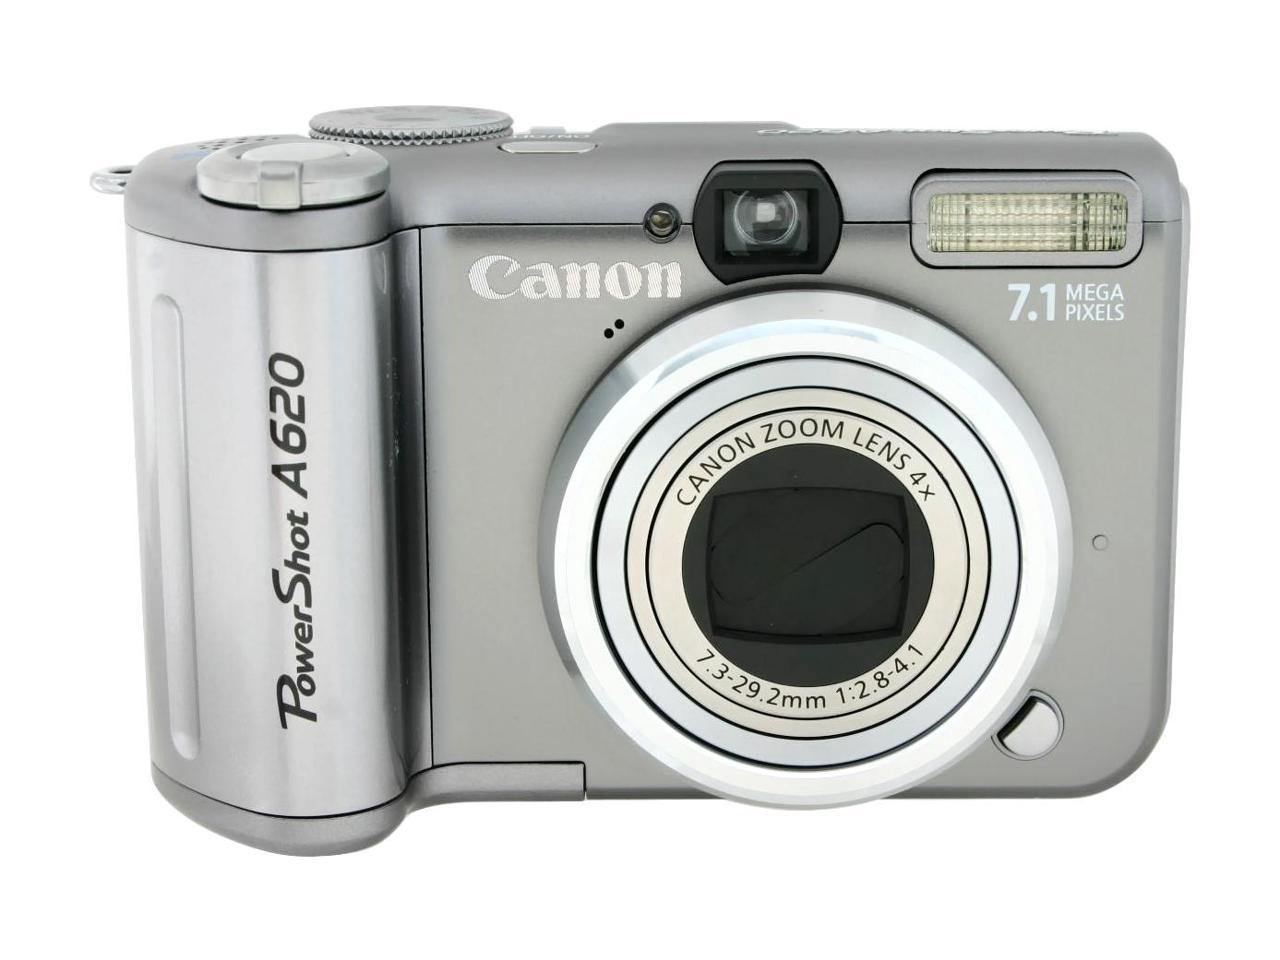 Canon PowerShot A620 Silver 7.1 MP Digital Camera - Newegg.com